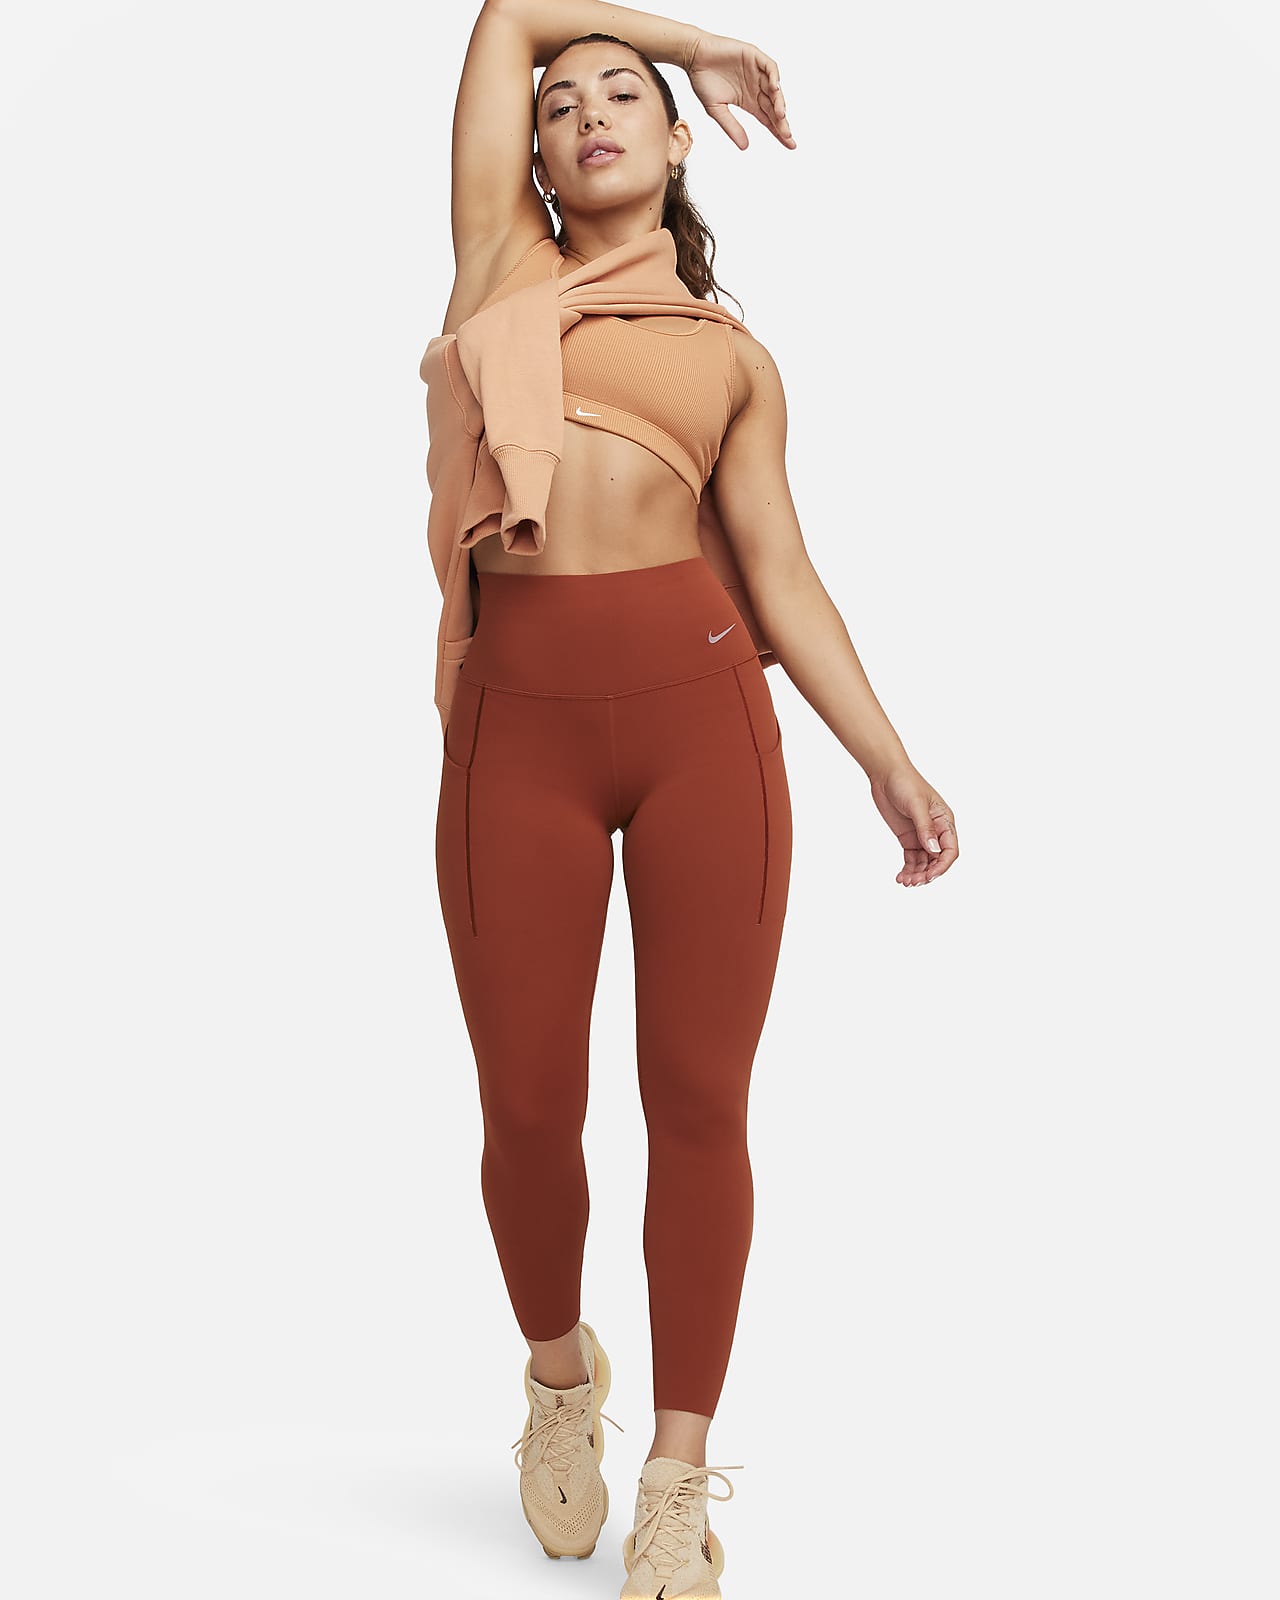 Nike Universa-leggings i 7/8 længde med medium støtte, høj talje og lommer til kvinder